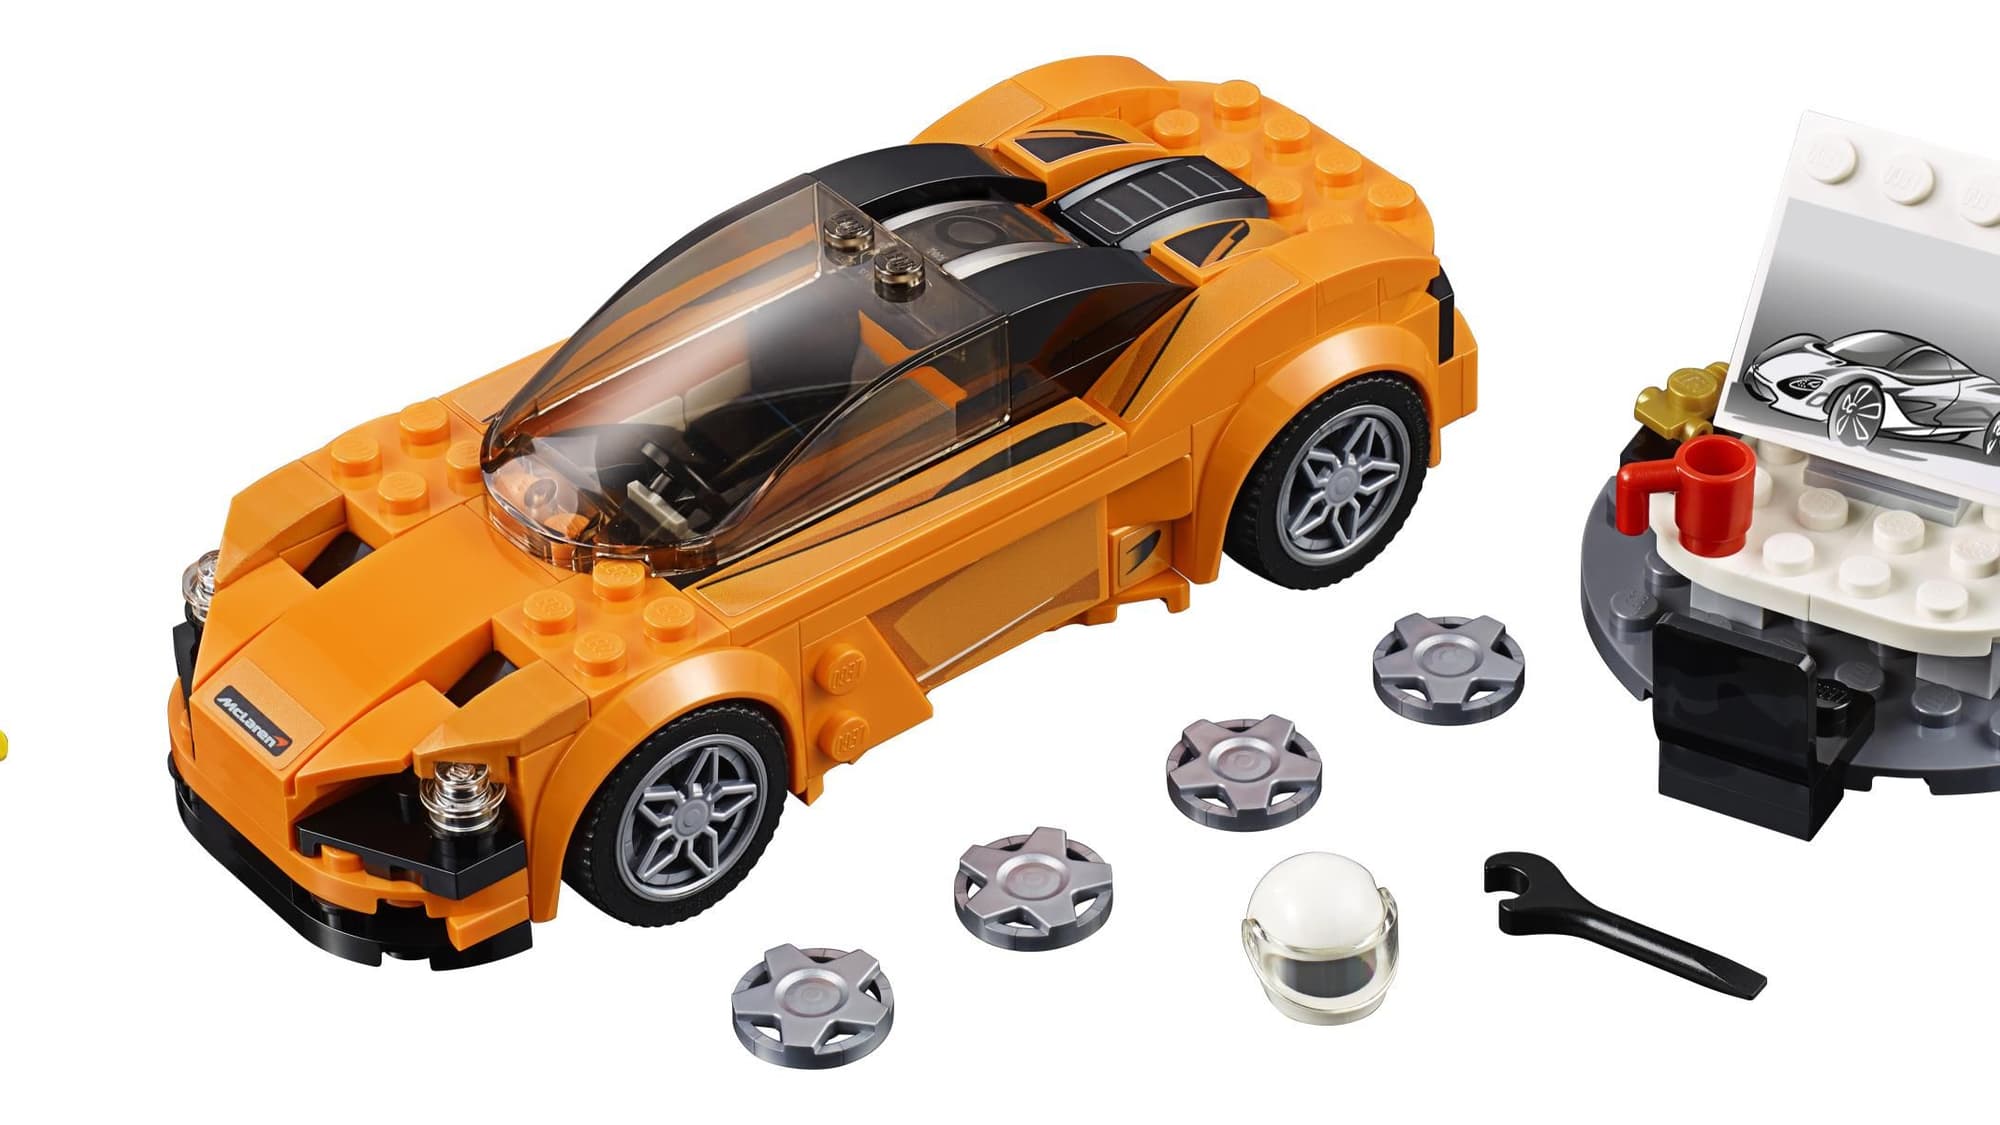 McLaren 720S in Lego form